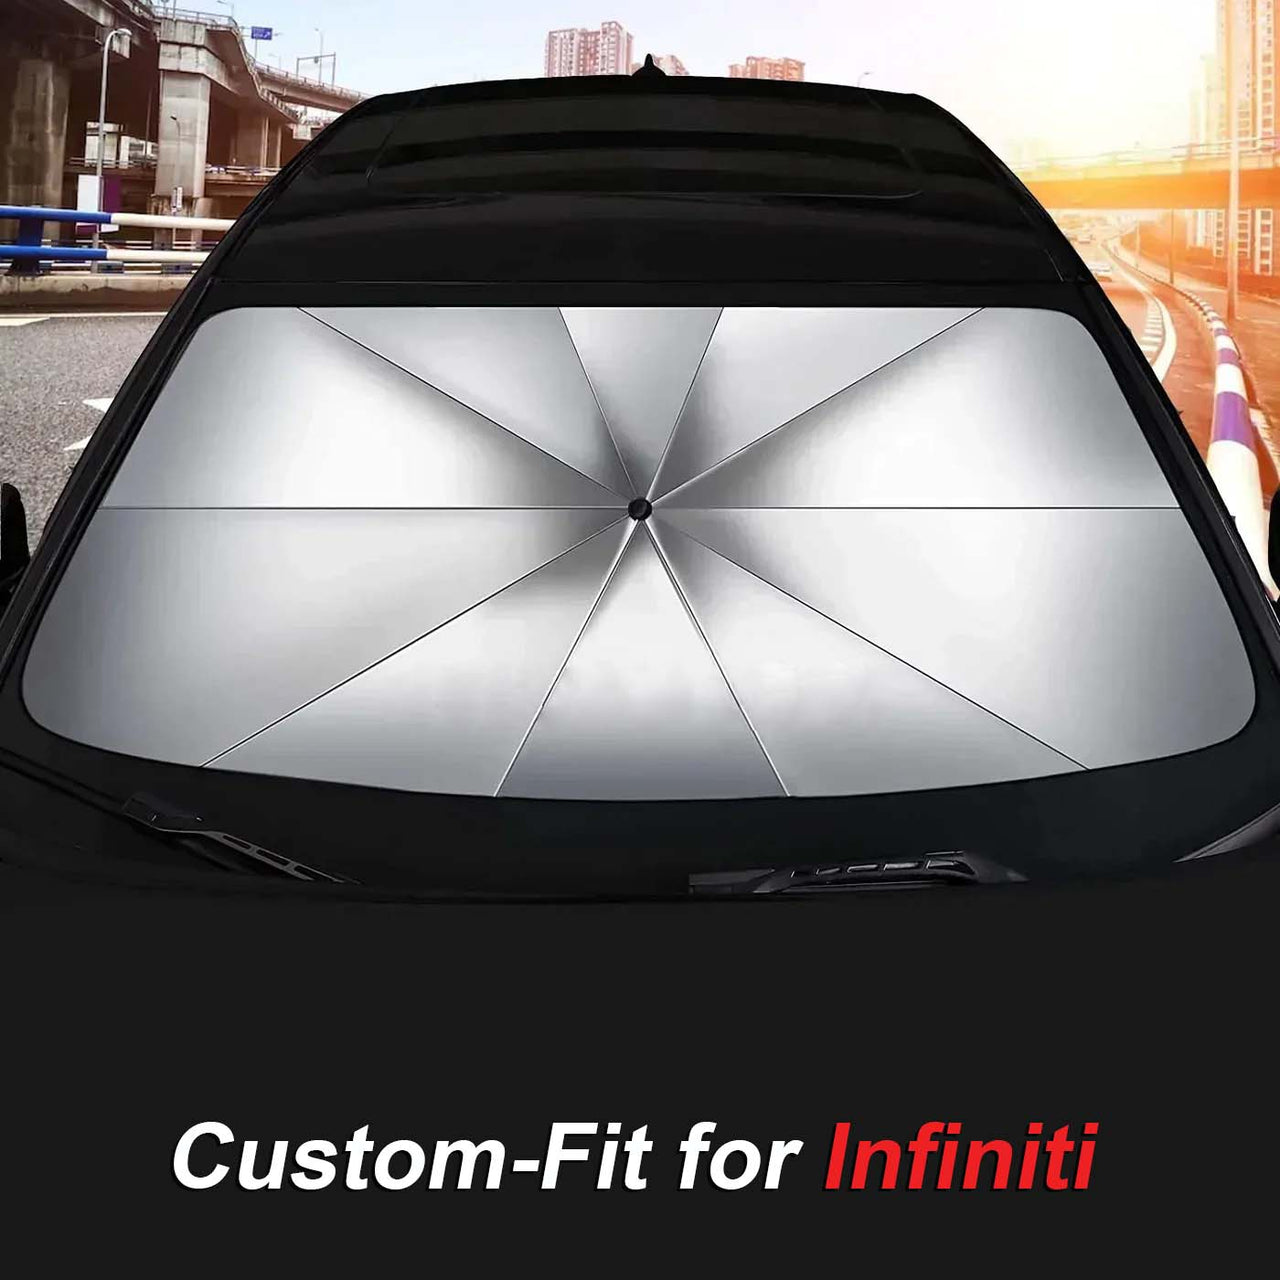 Custom-Fit for Car Windshield Sun Shade, Foldable Windshield Sunshade Sun and UV Protection, Car Sun Shade Windshield